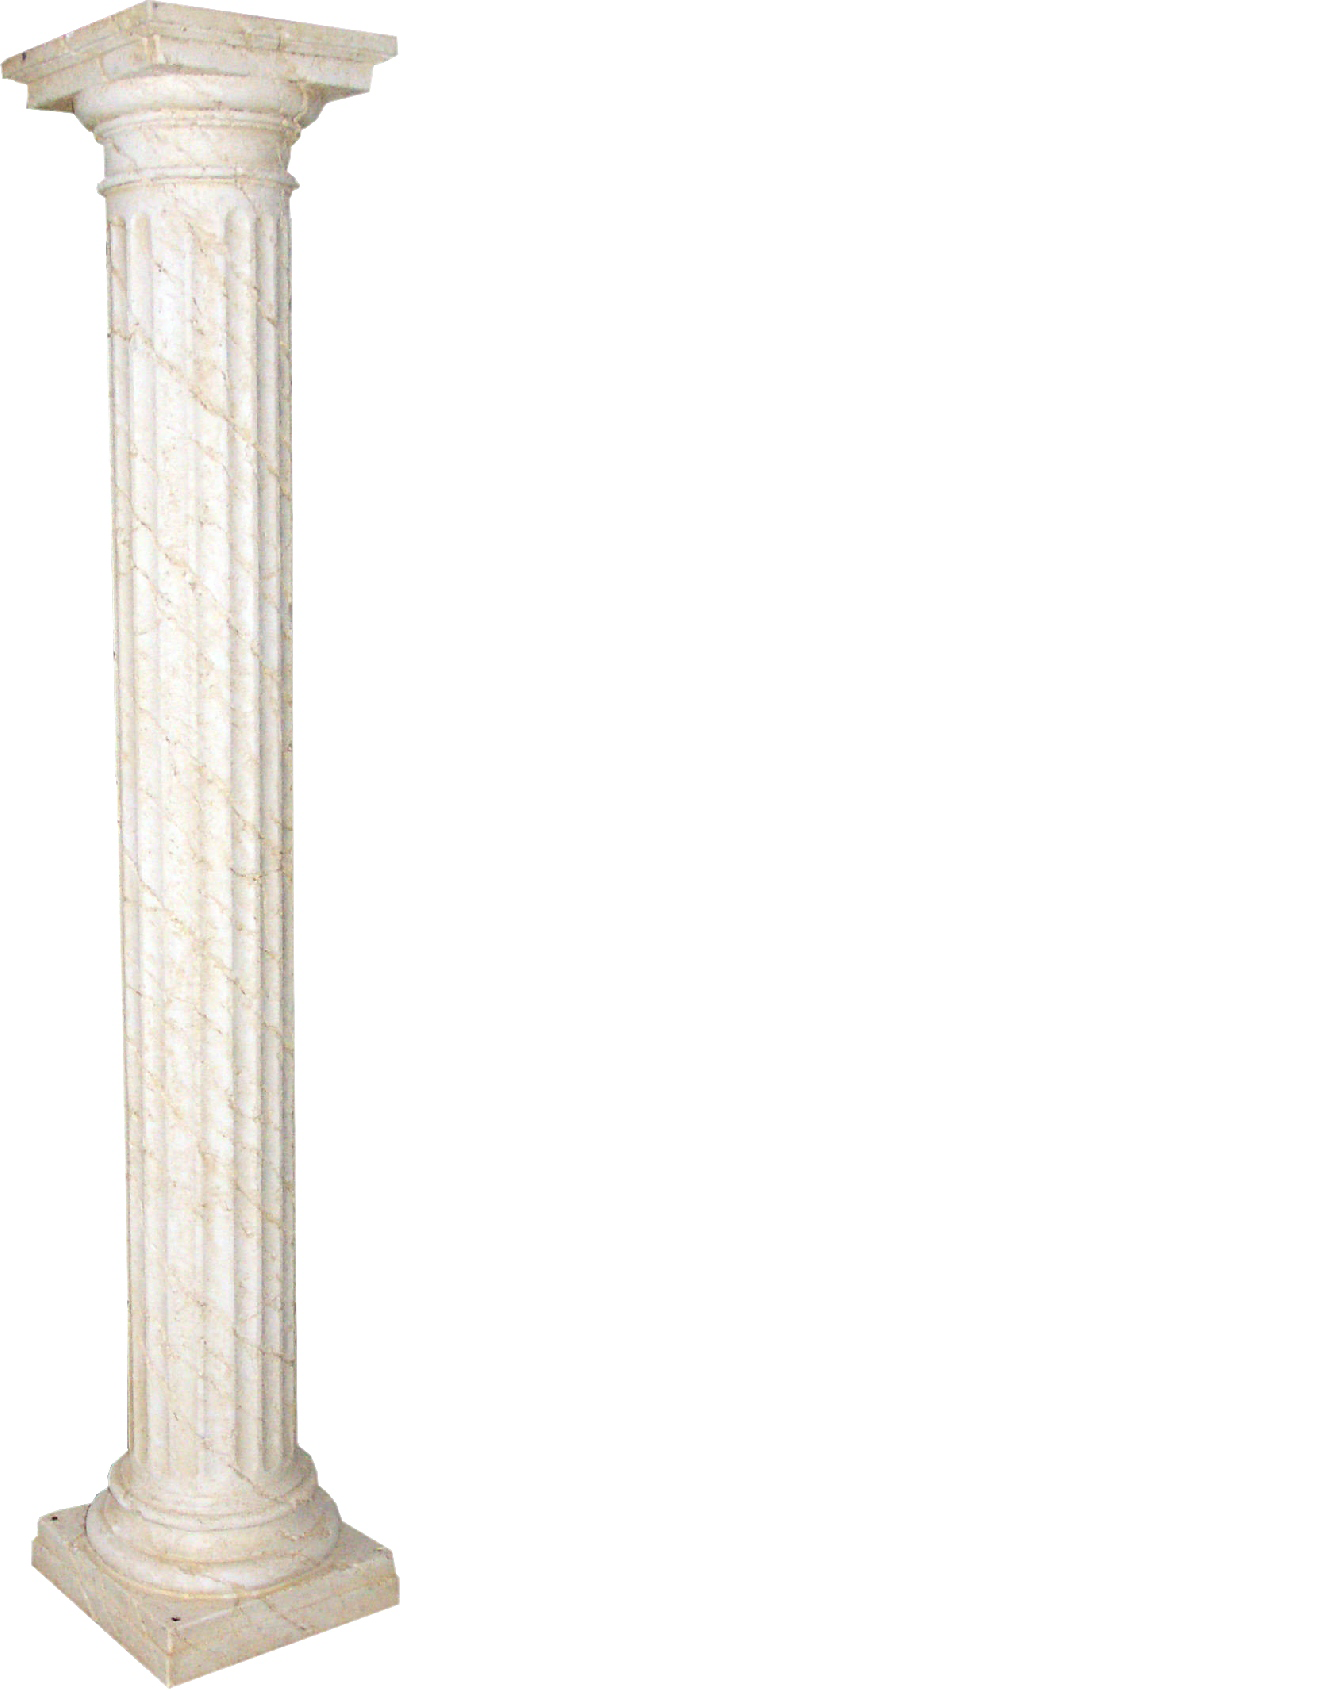 XXL Griechische Säule Antik Stil Design Säulen Luxus Stützen Neu 214cm